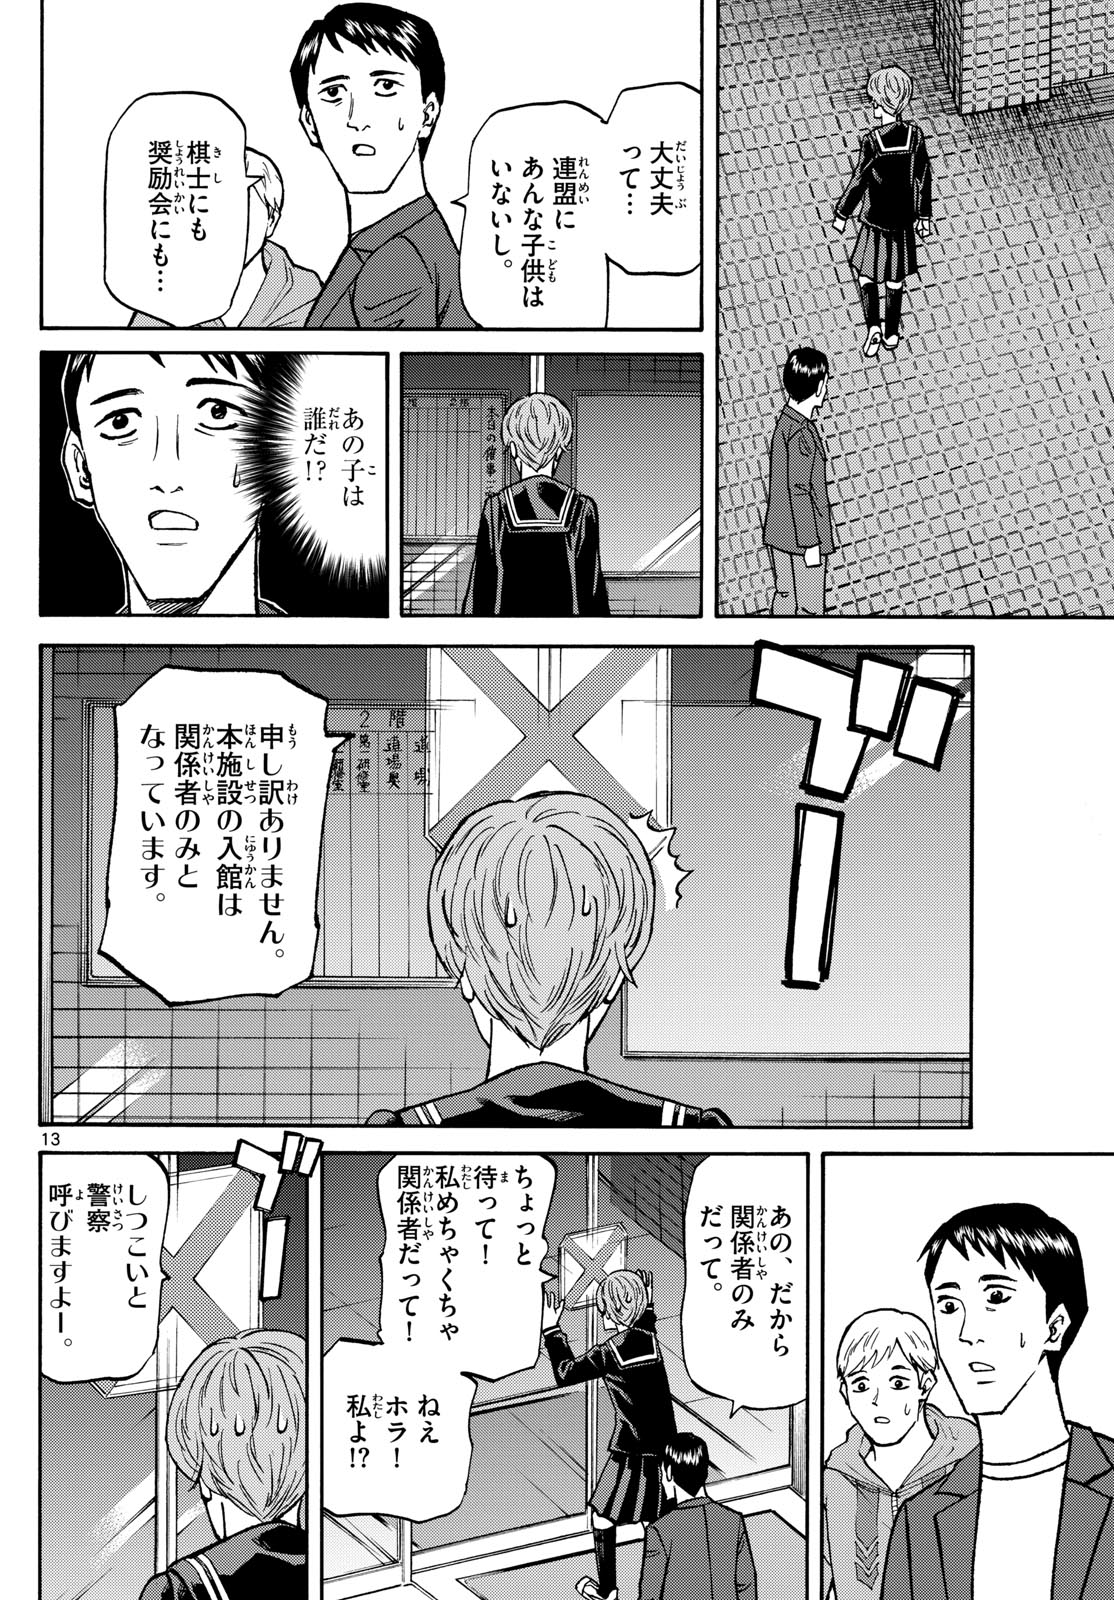 Tatsu to Ichigo - Chapter 182 - Page 13